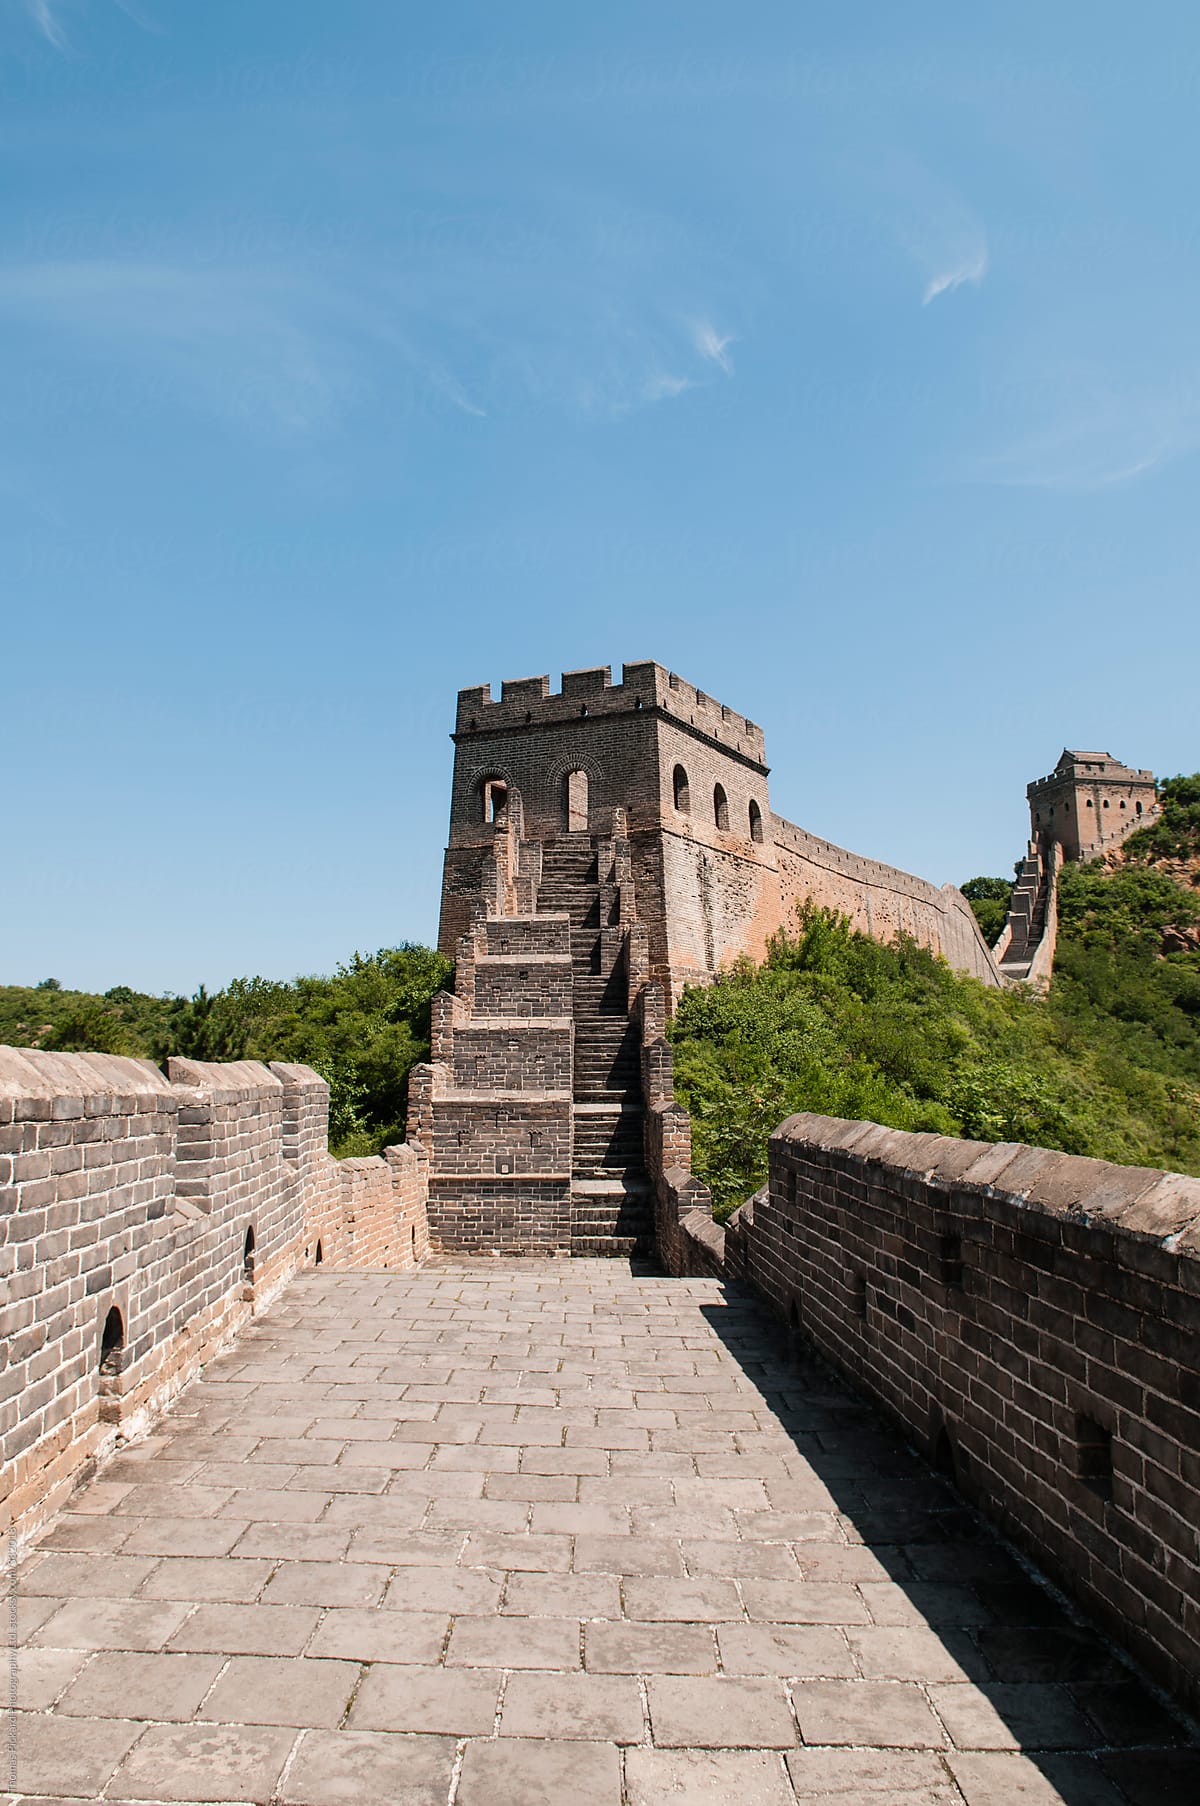 The Great Wall of China, China.